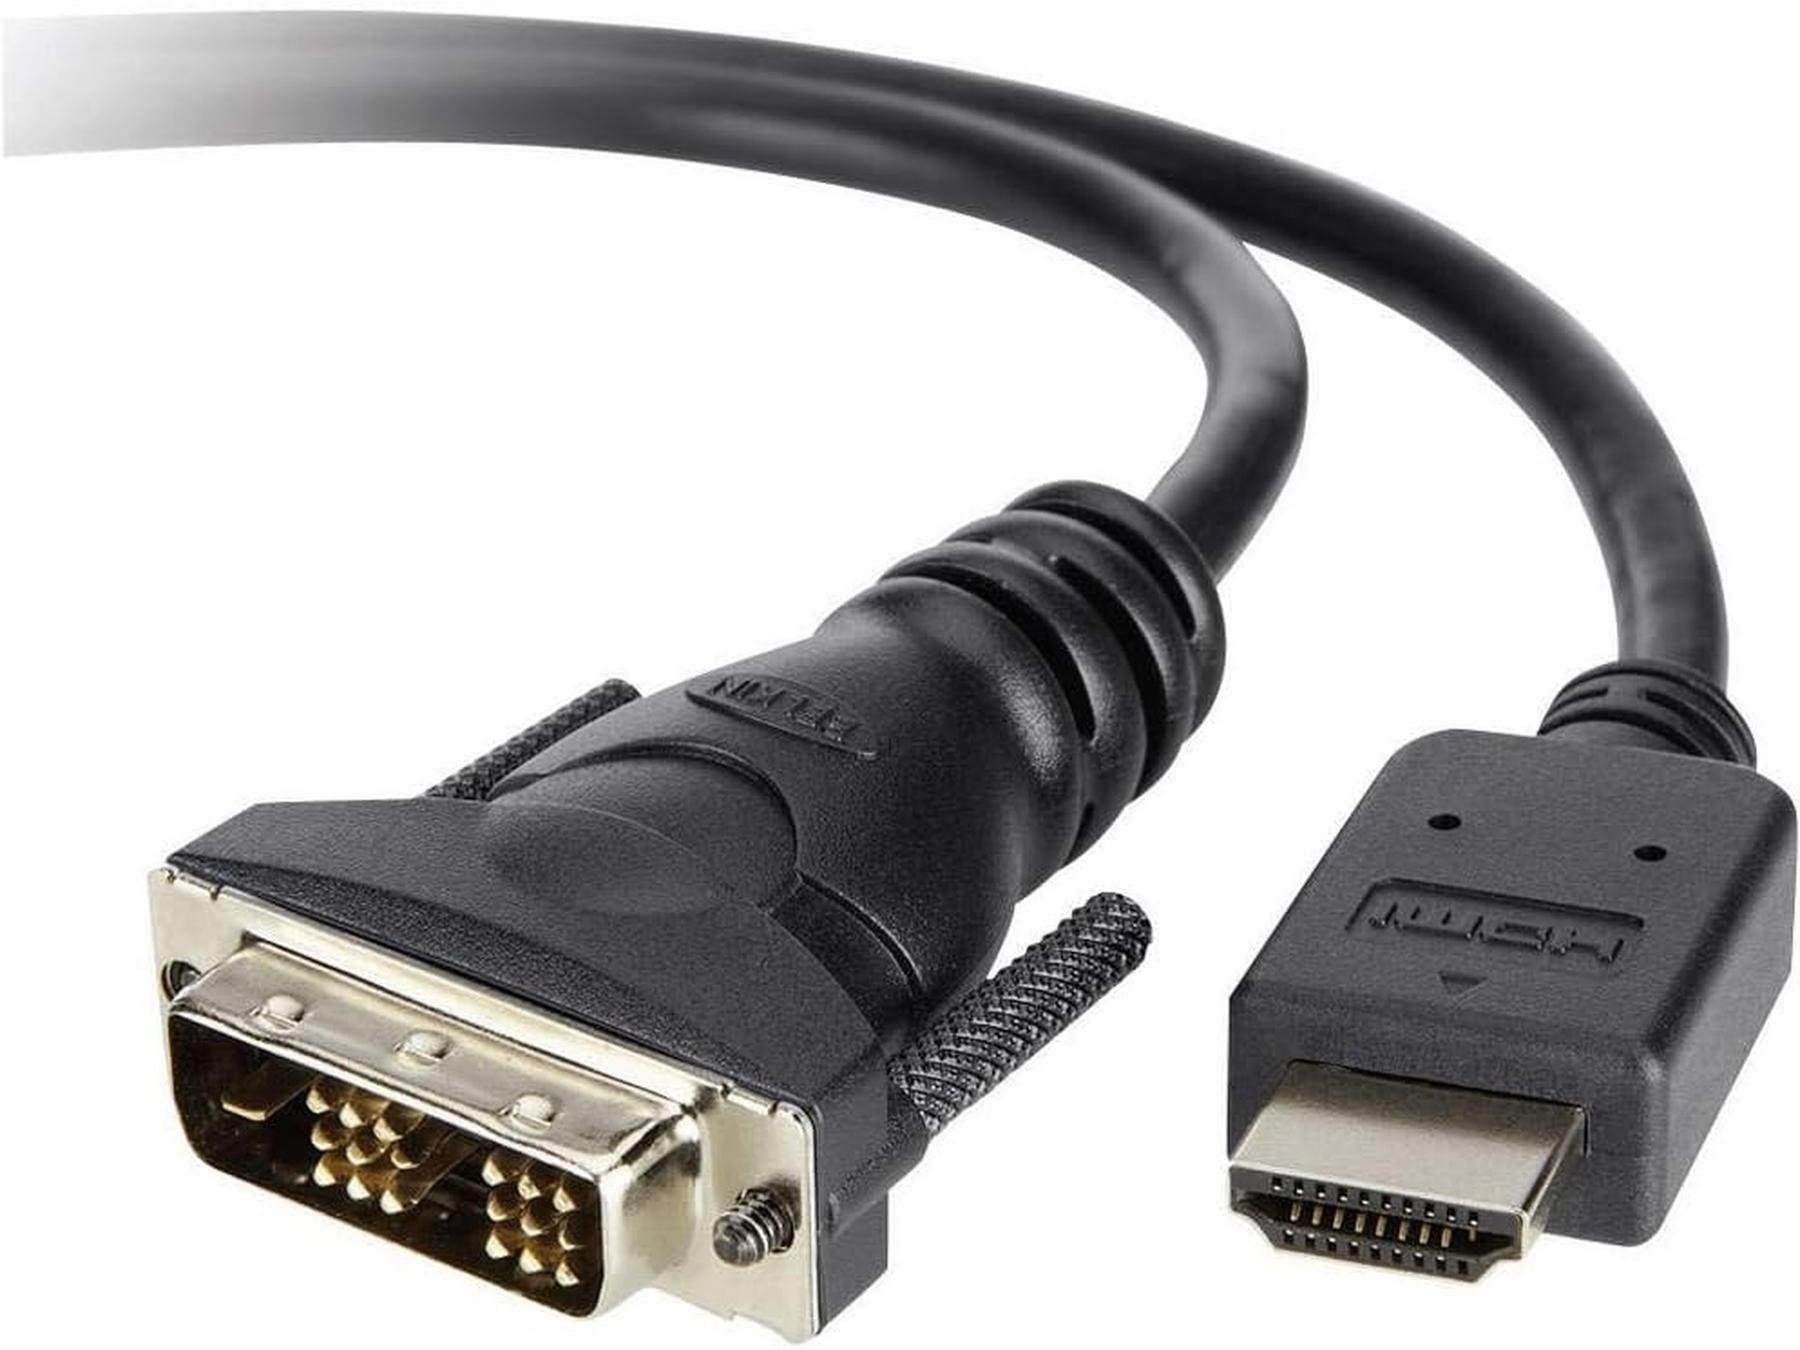 Belkin 3m HDMI auf DVI 18+1 Digital Kabel FULL HD 1080p PC Monitor TV HDMI-Adapter HDMI, DVI zu HDMI, Digital Video Kabel,DVI / HDMI Adapterkabel